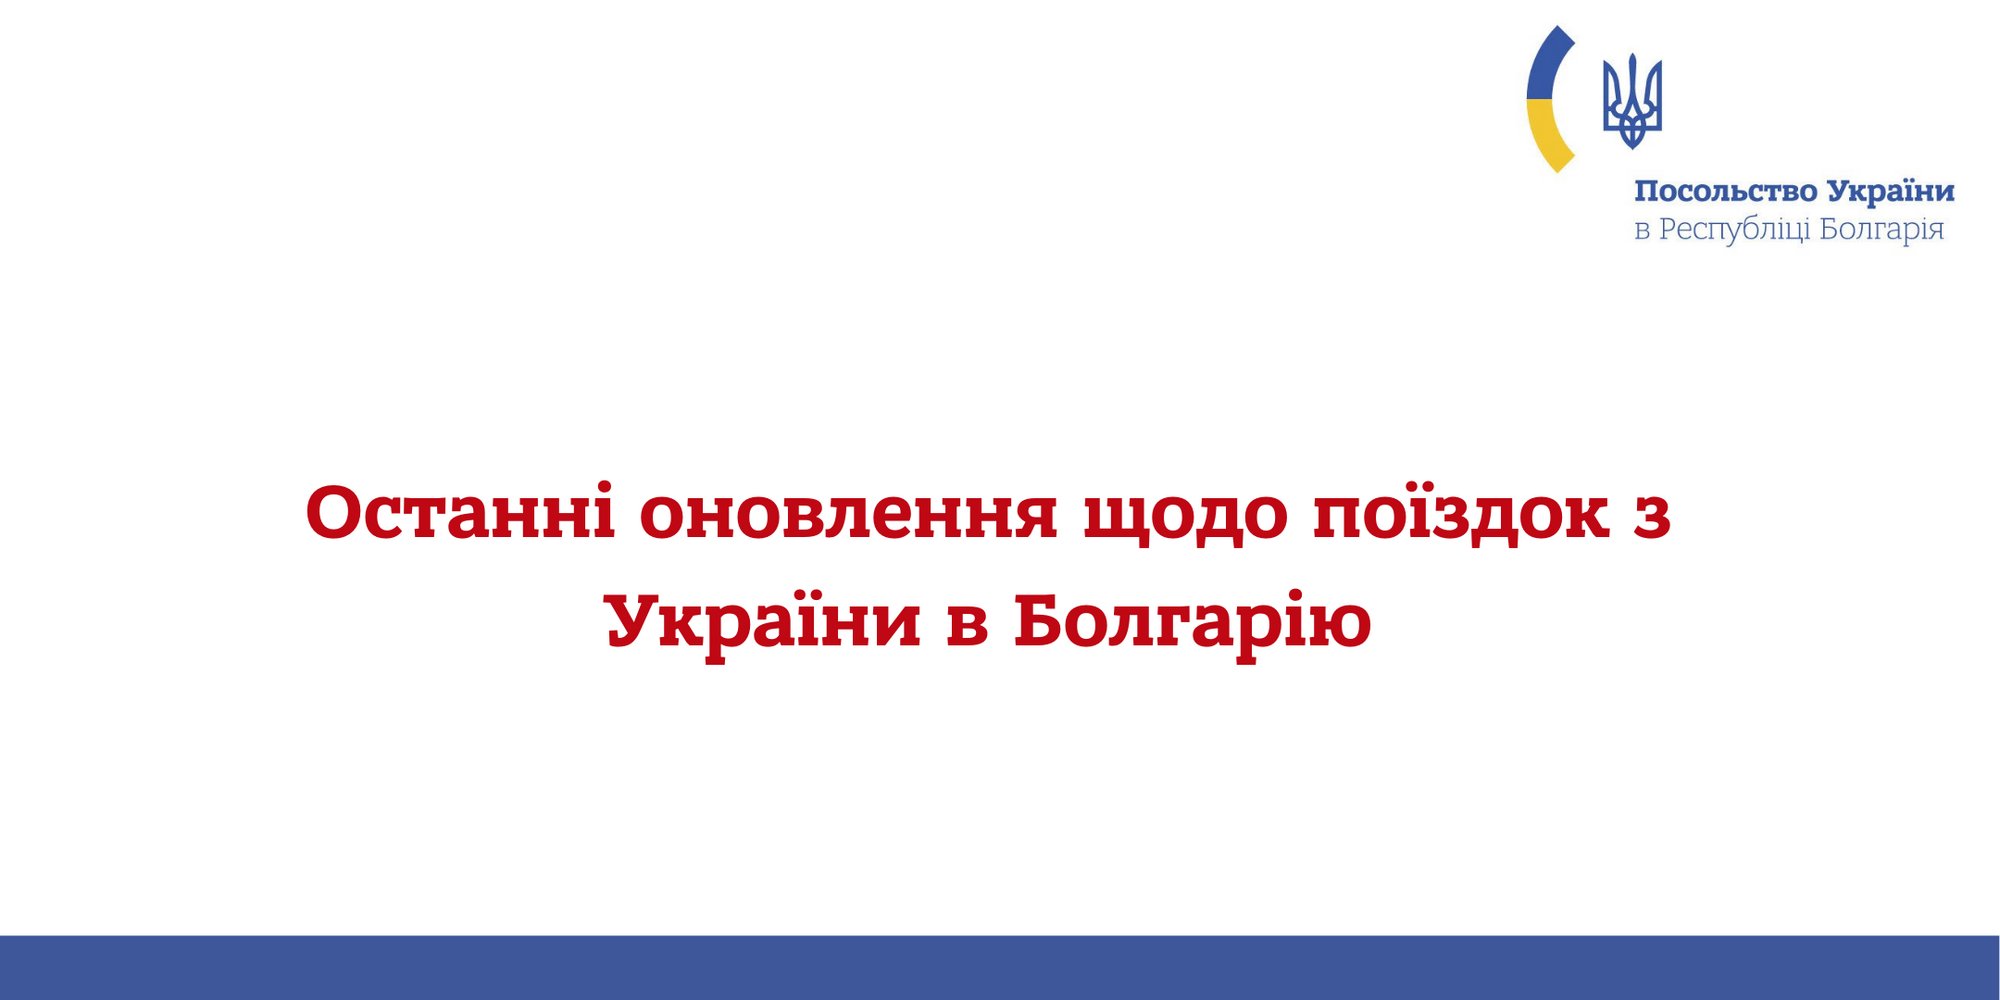 Facebook / Посольство Украины в Болгарии